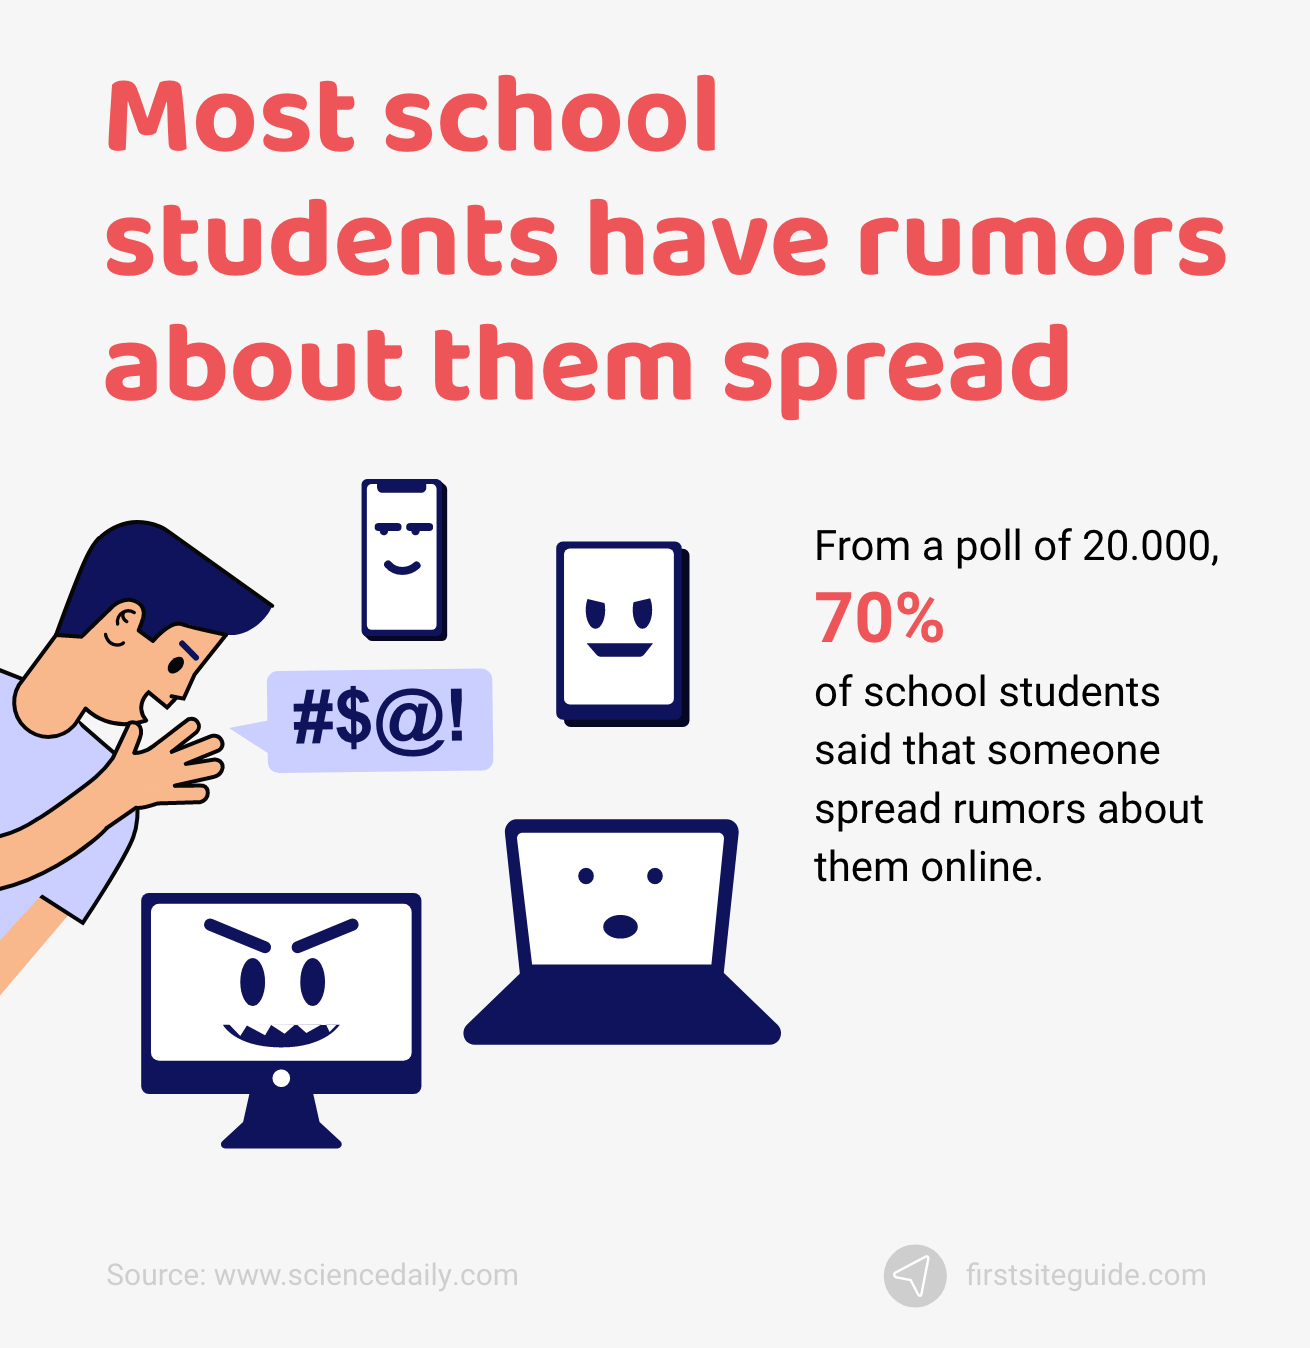 大多數中學生都有關於他們的謠言在網上傳播